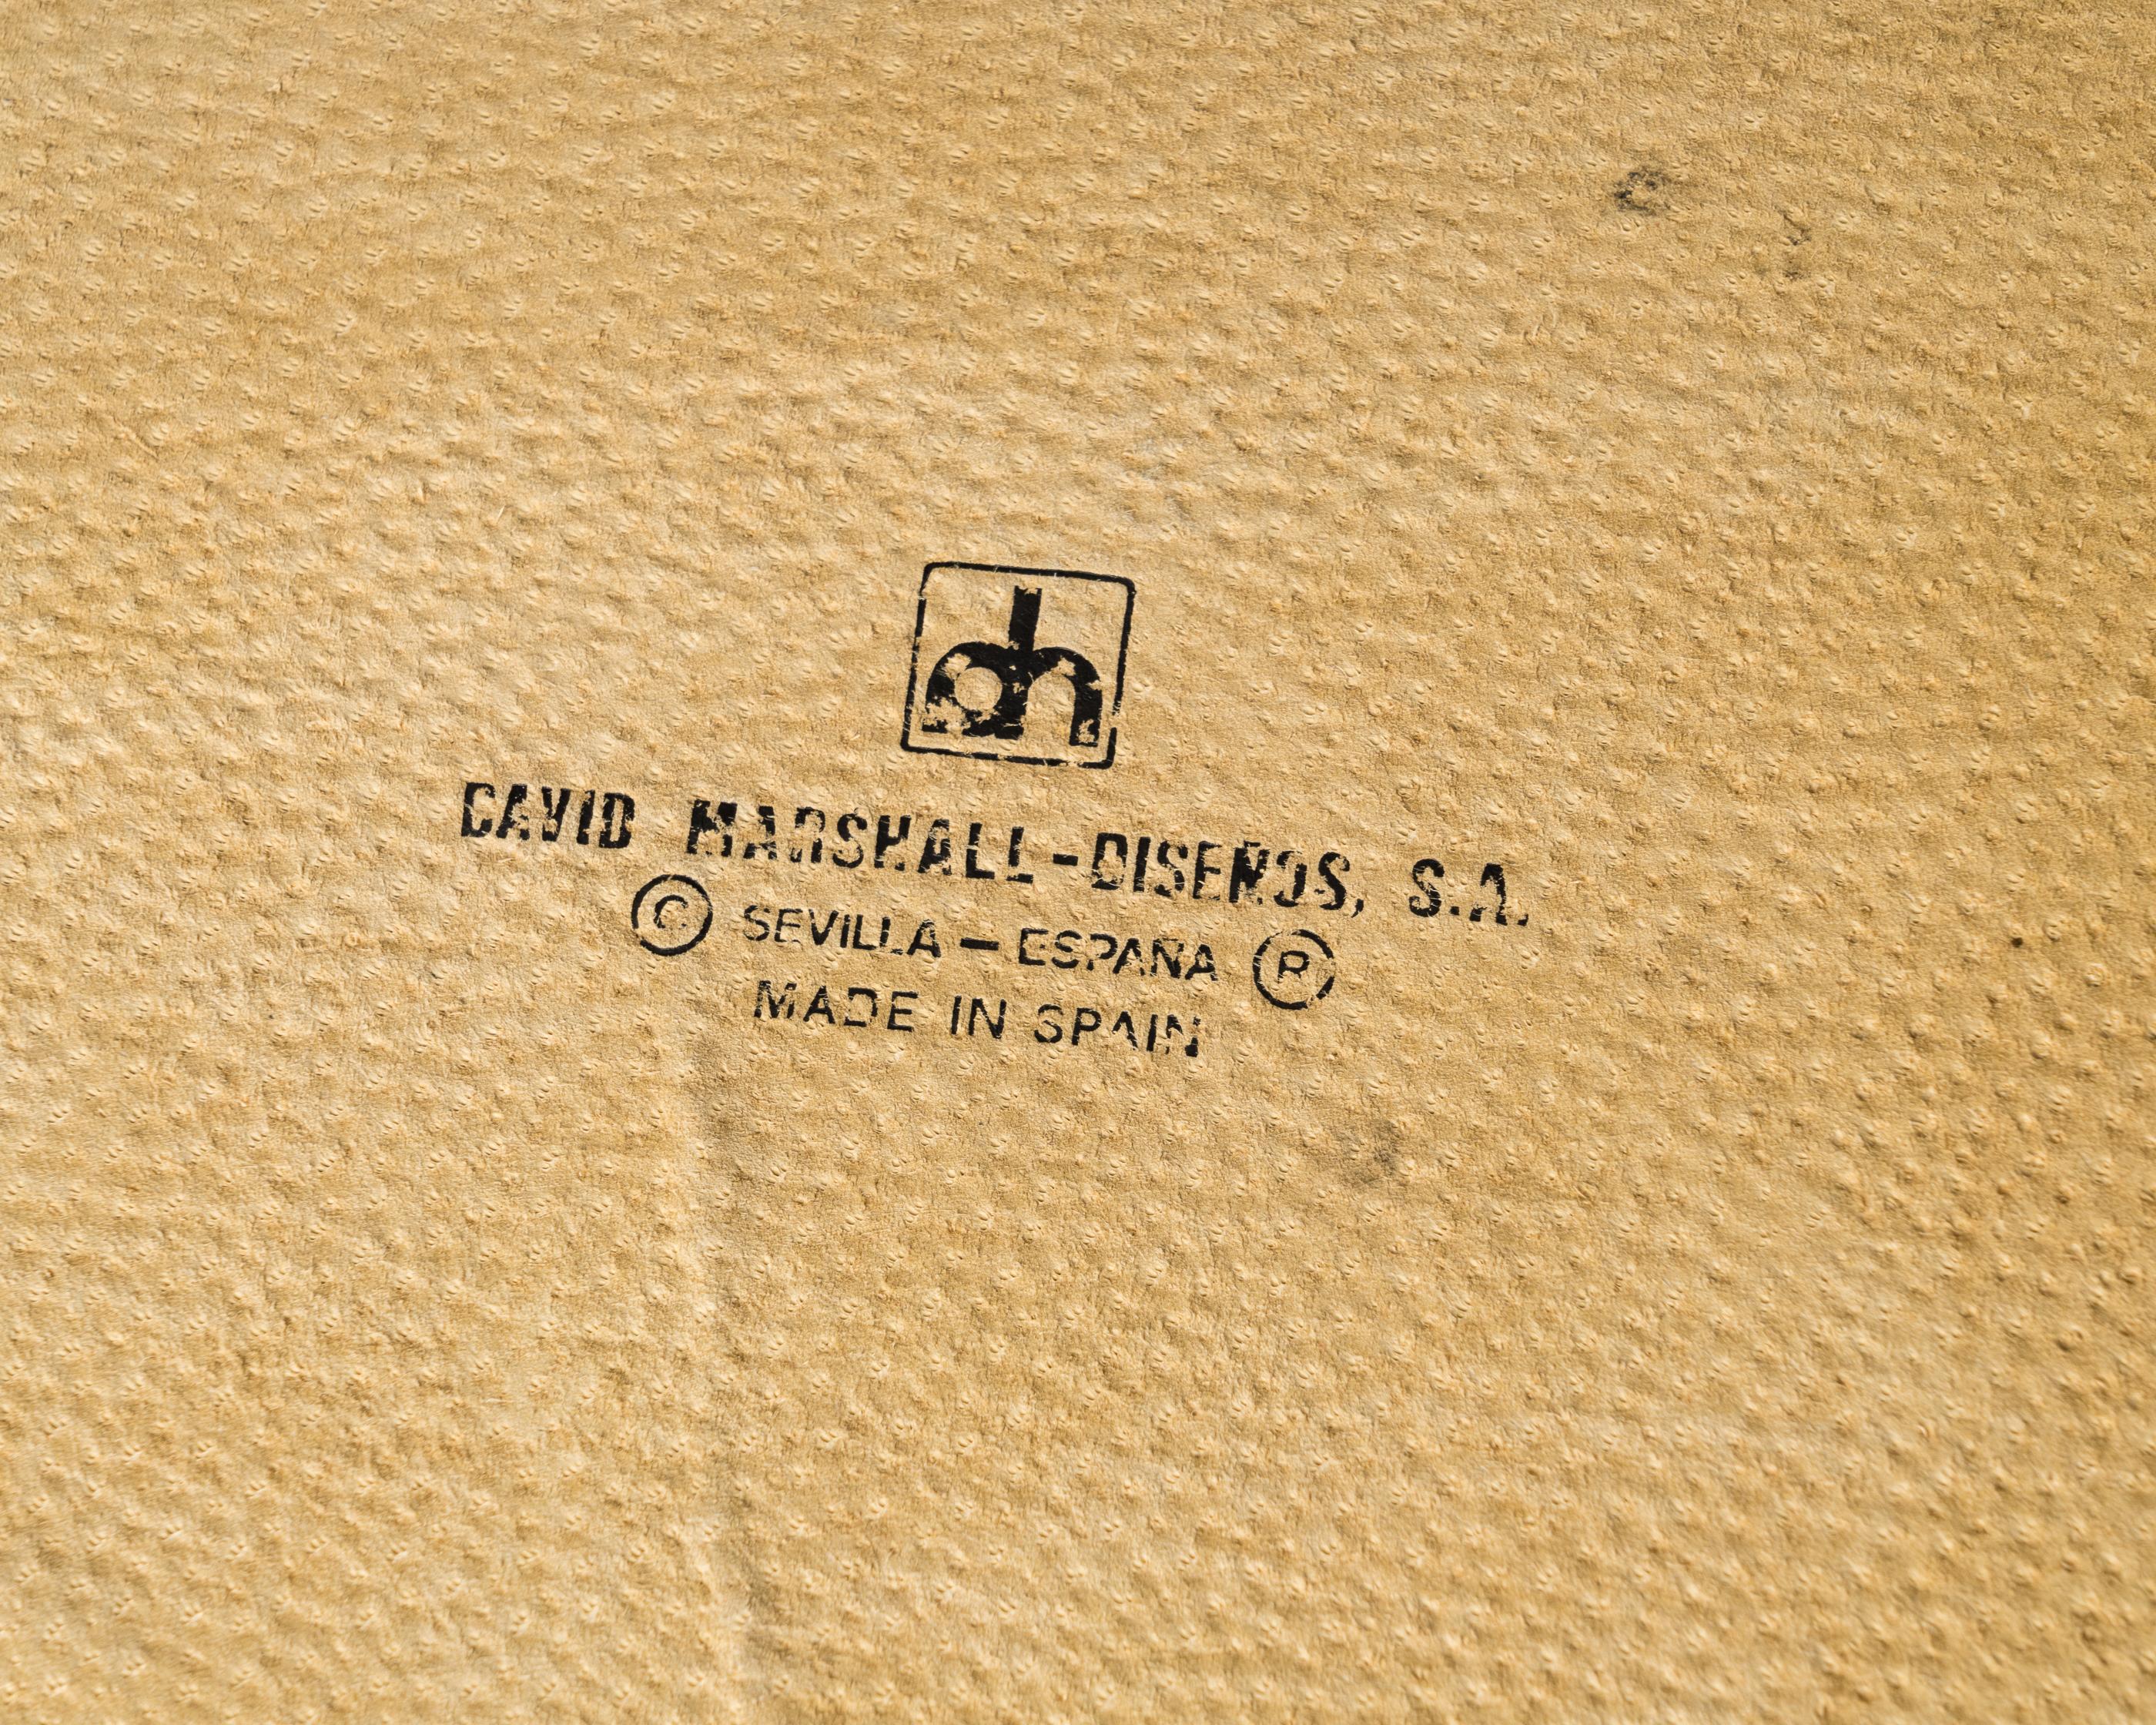 Bronzo Vassoio brutalista in fusione d'acciaio e bronzo firmato da David Marshall - Spagna, anni '70 in vendita